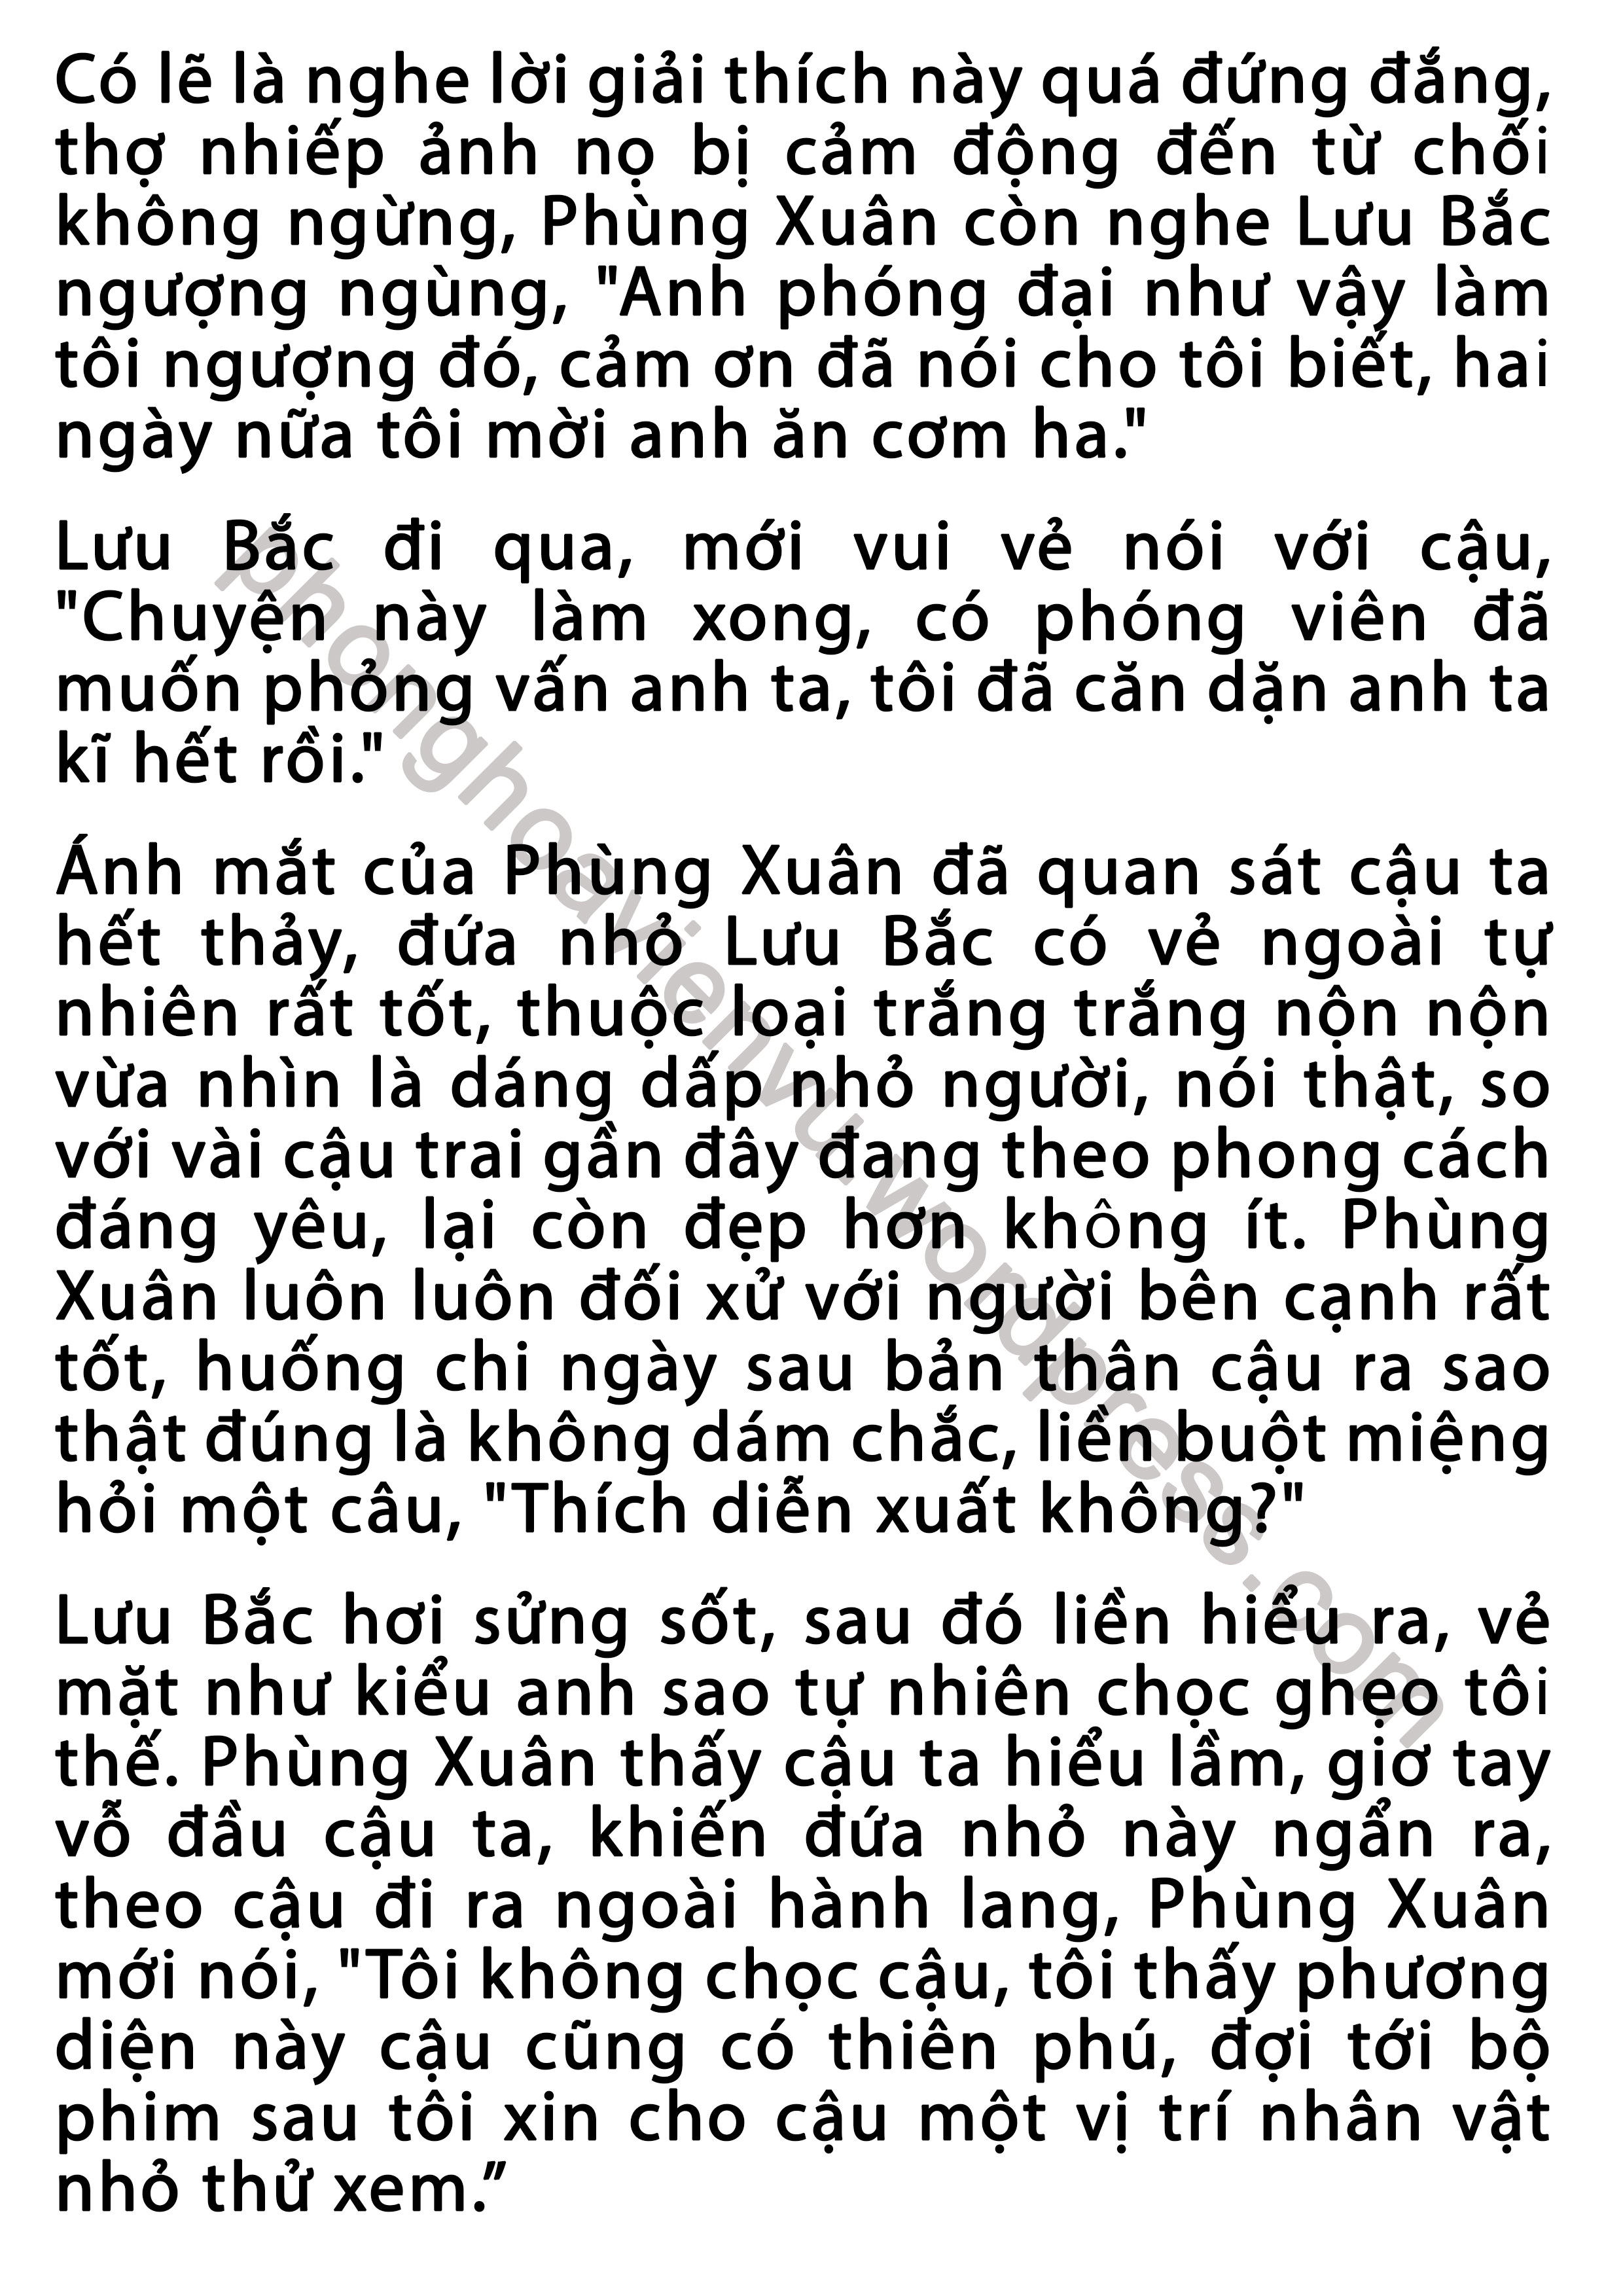 phung-xuan-43-pic2